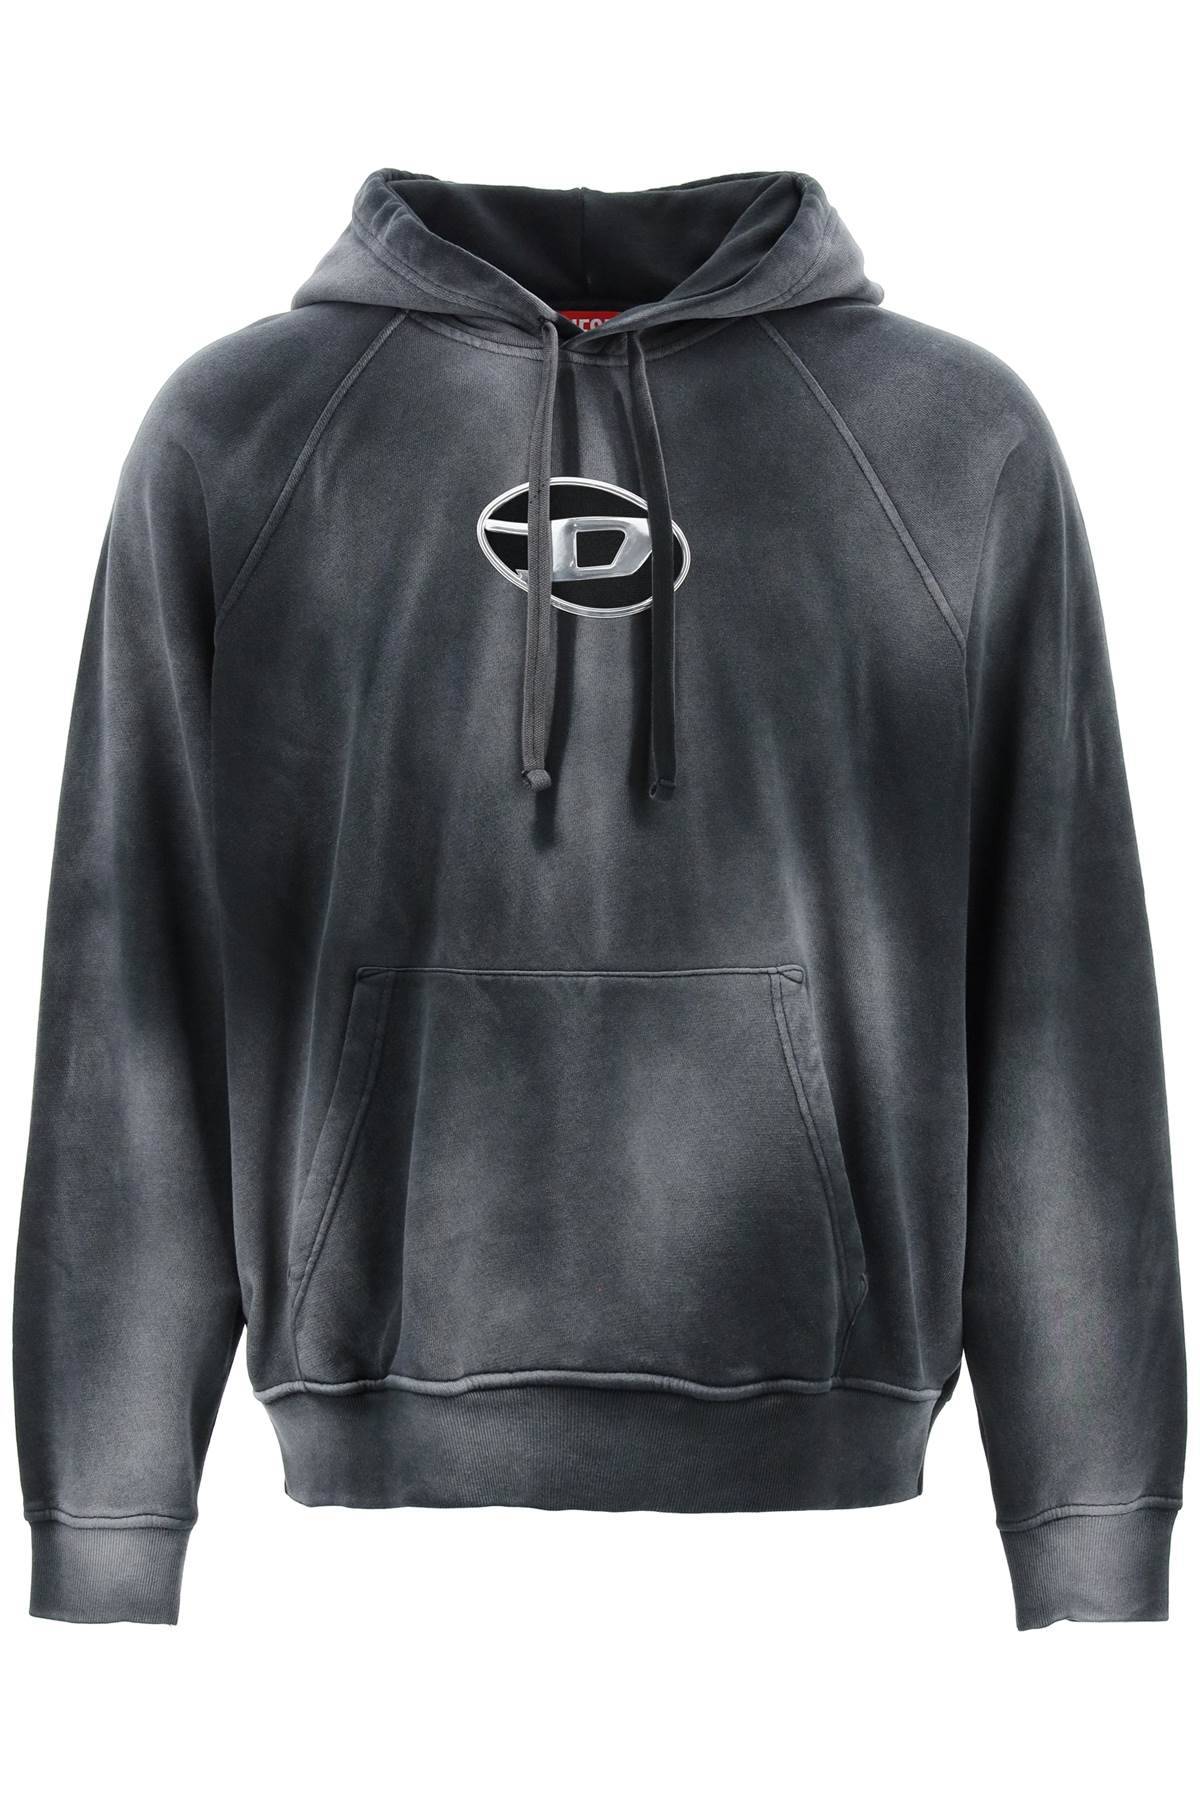 Diesel DIESEL hooded sweatshirt with oval logo and d cut